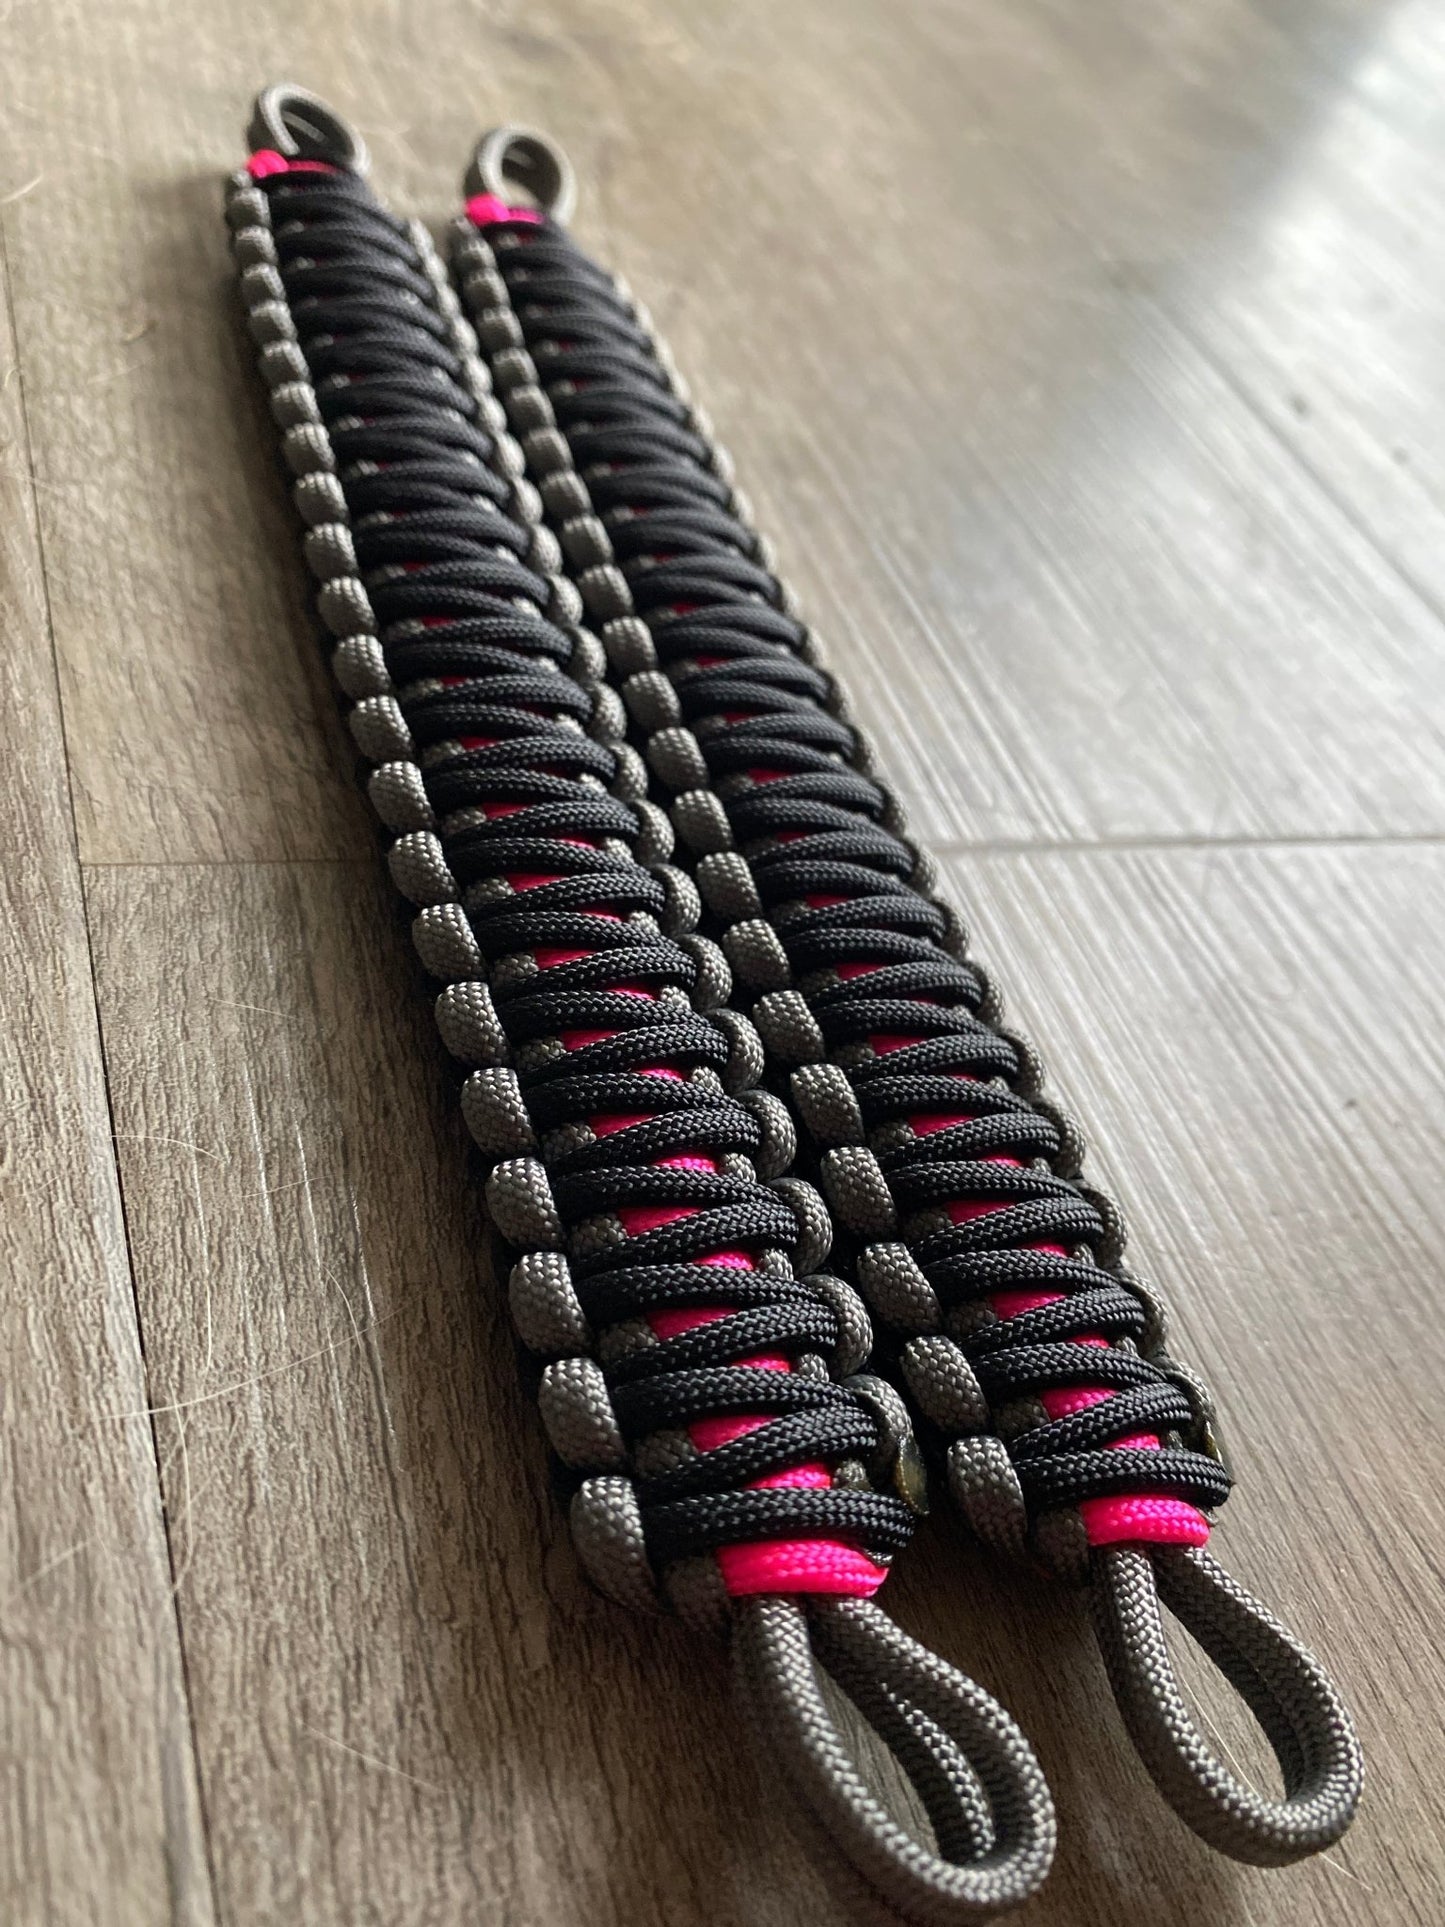 Krawler Grips Grey Neon Pink Black Paracord - Krawlergrips